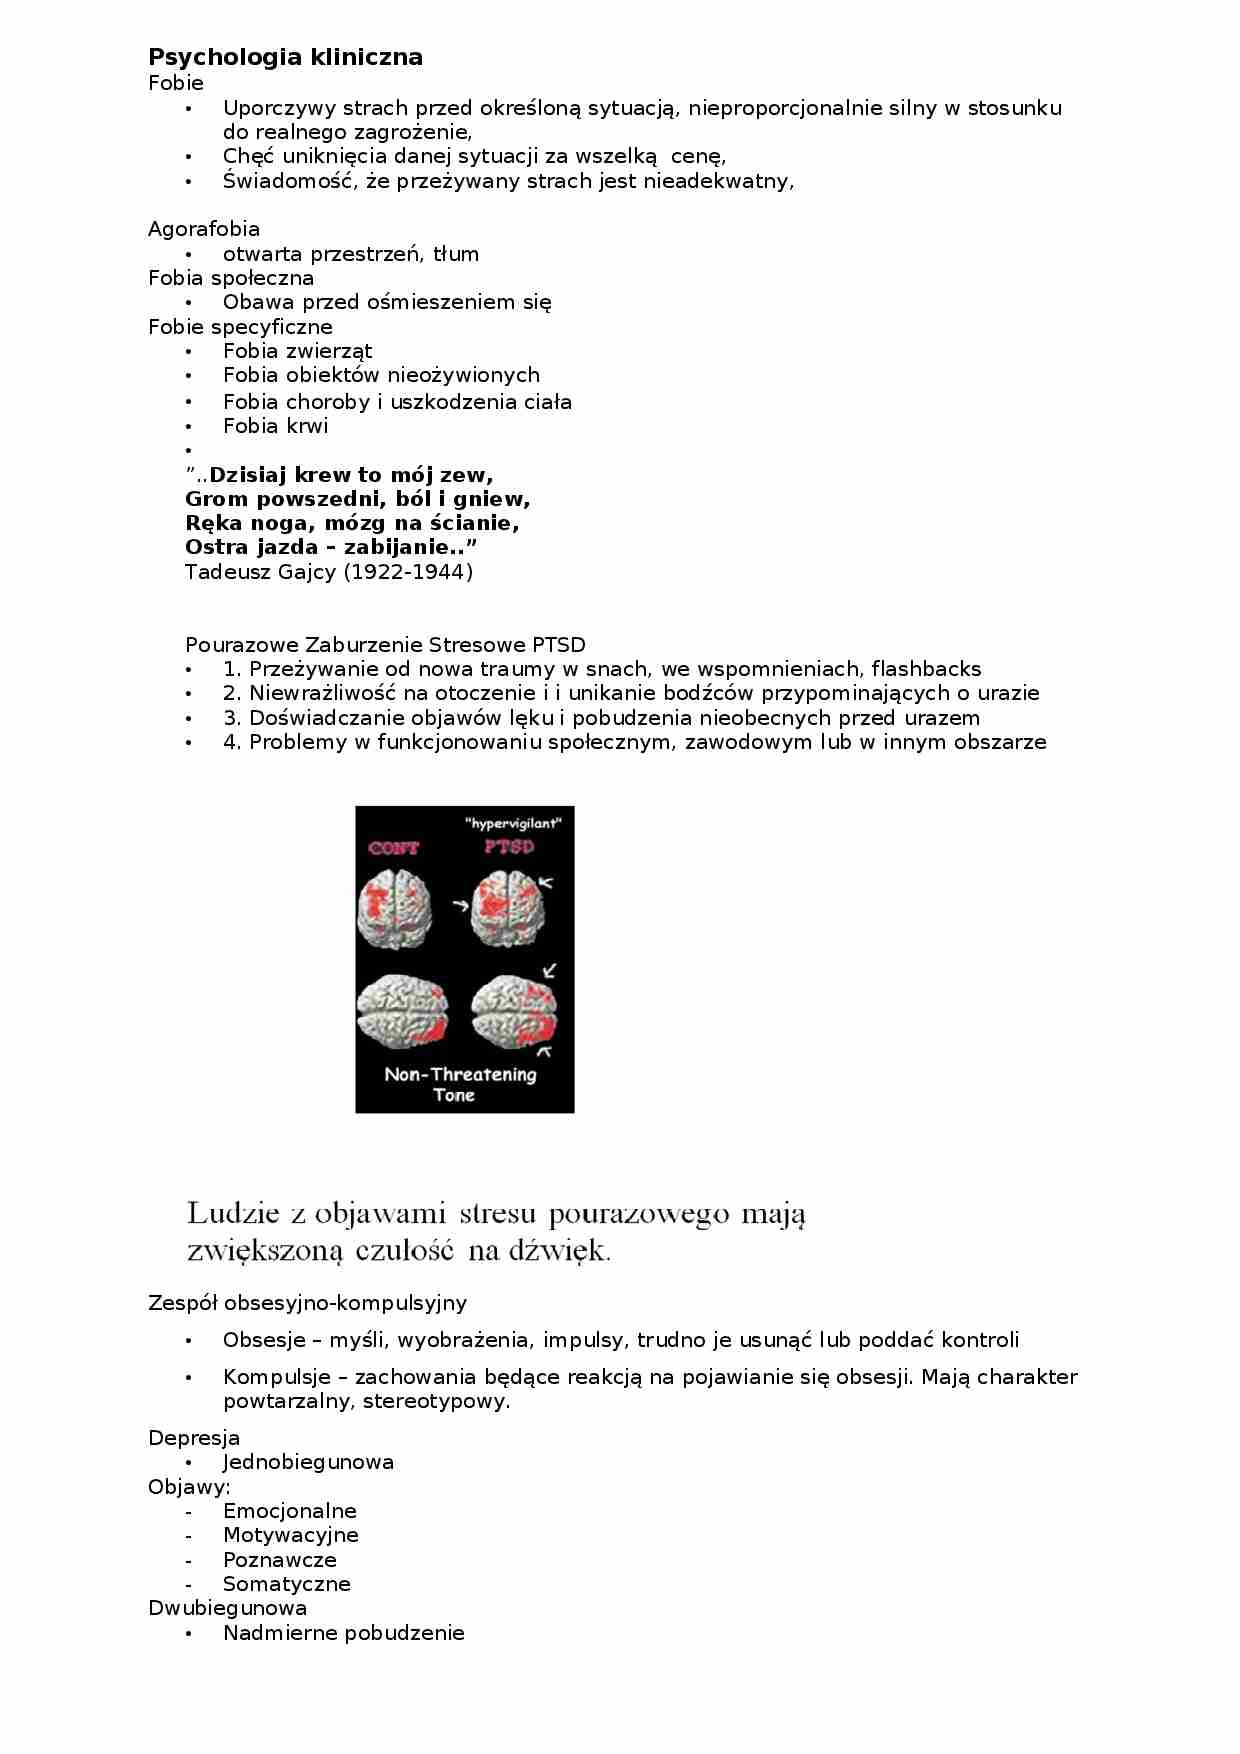 Psychologia kliniczna-opracowanie - strona 1